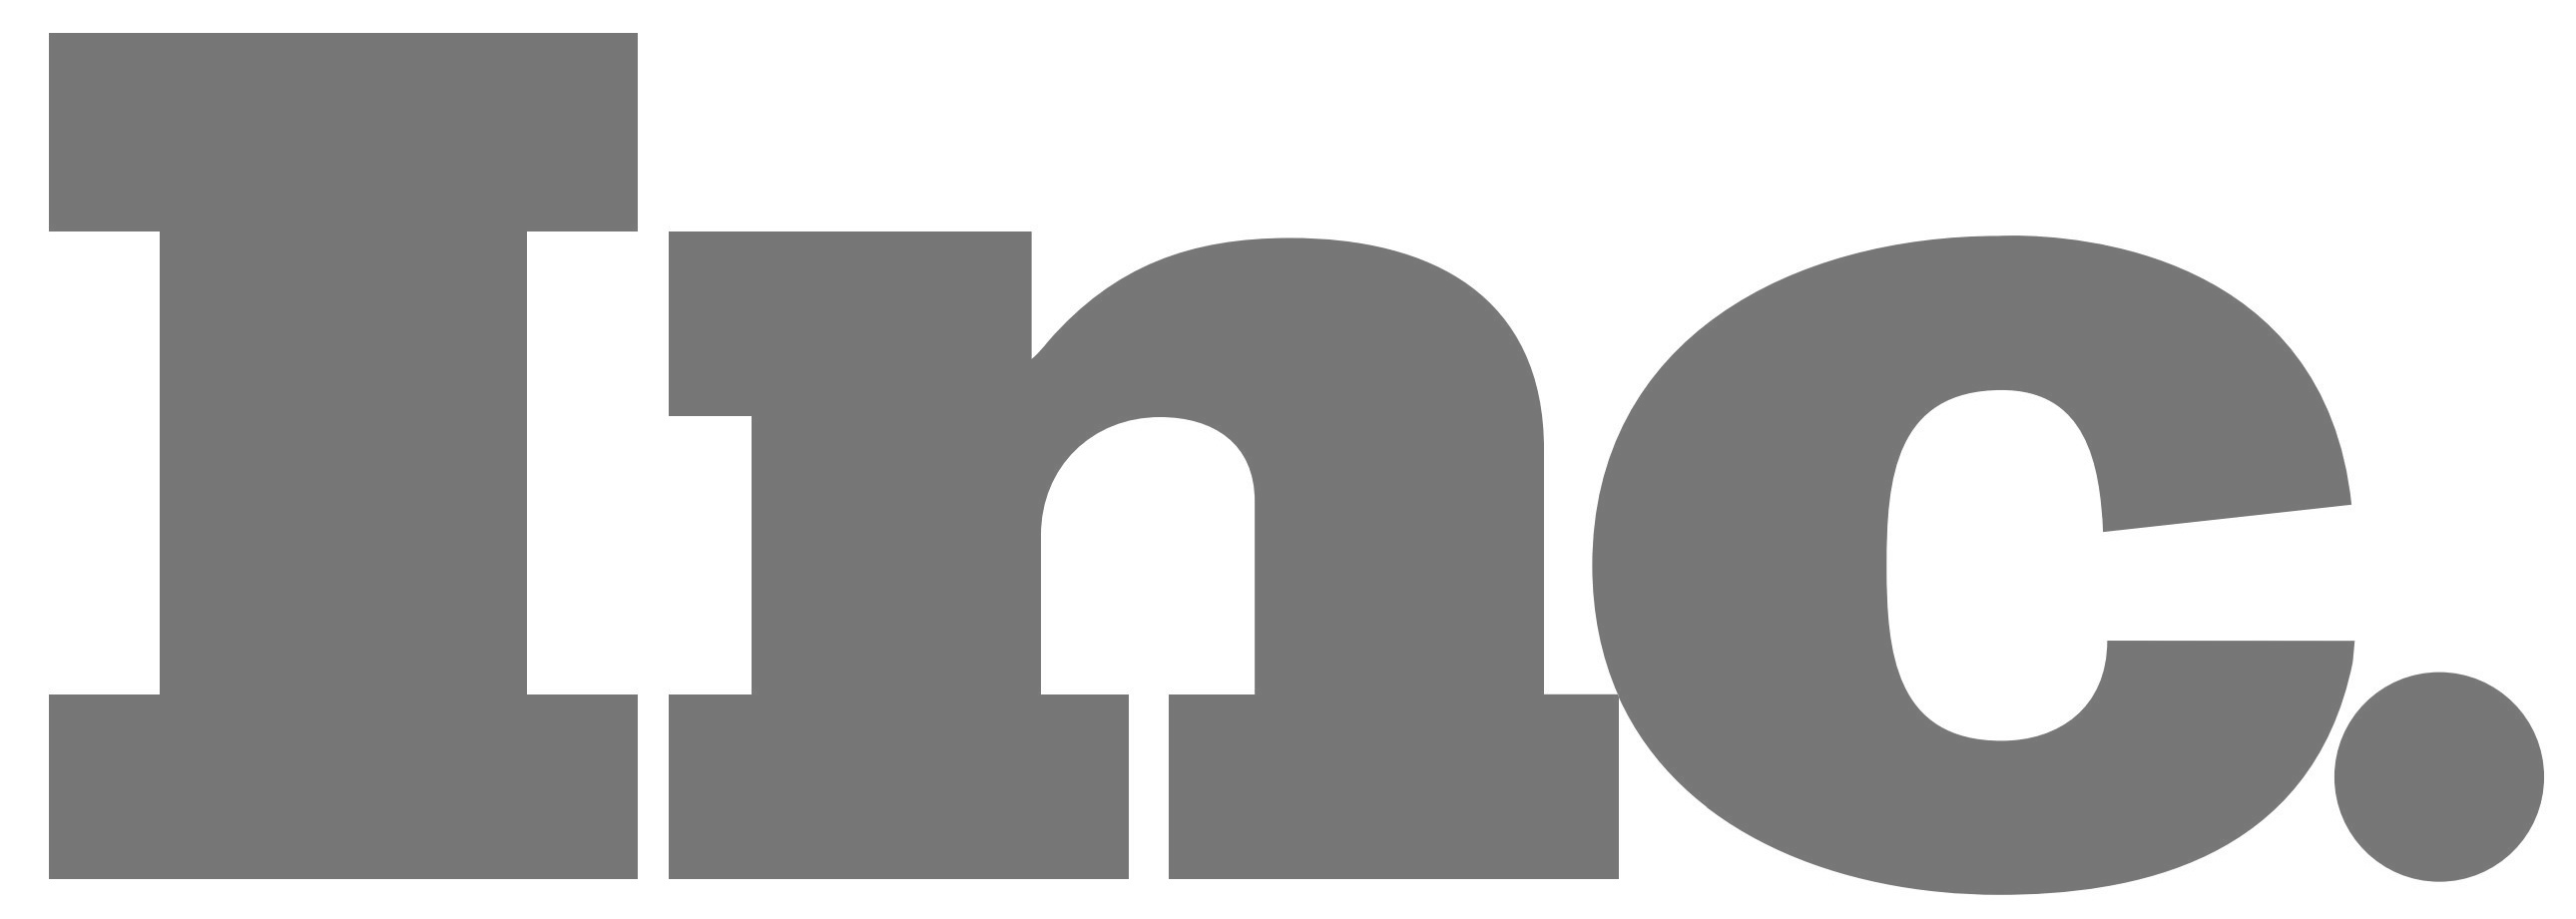 Inc. Magazine Logo